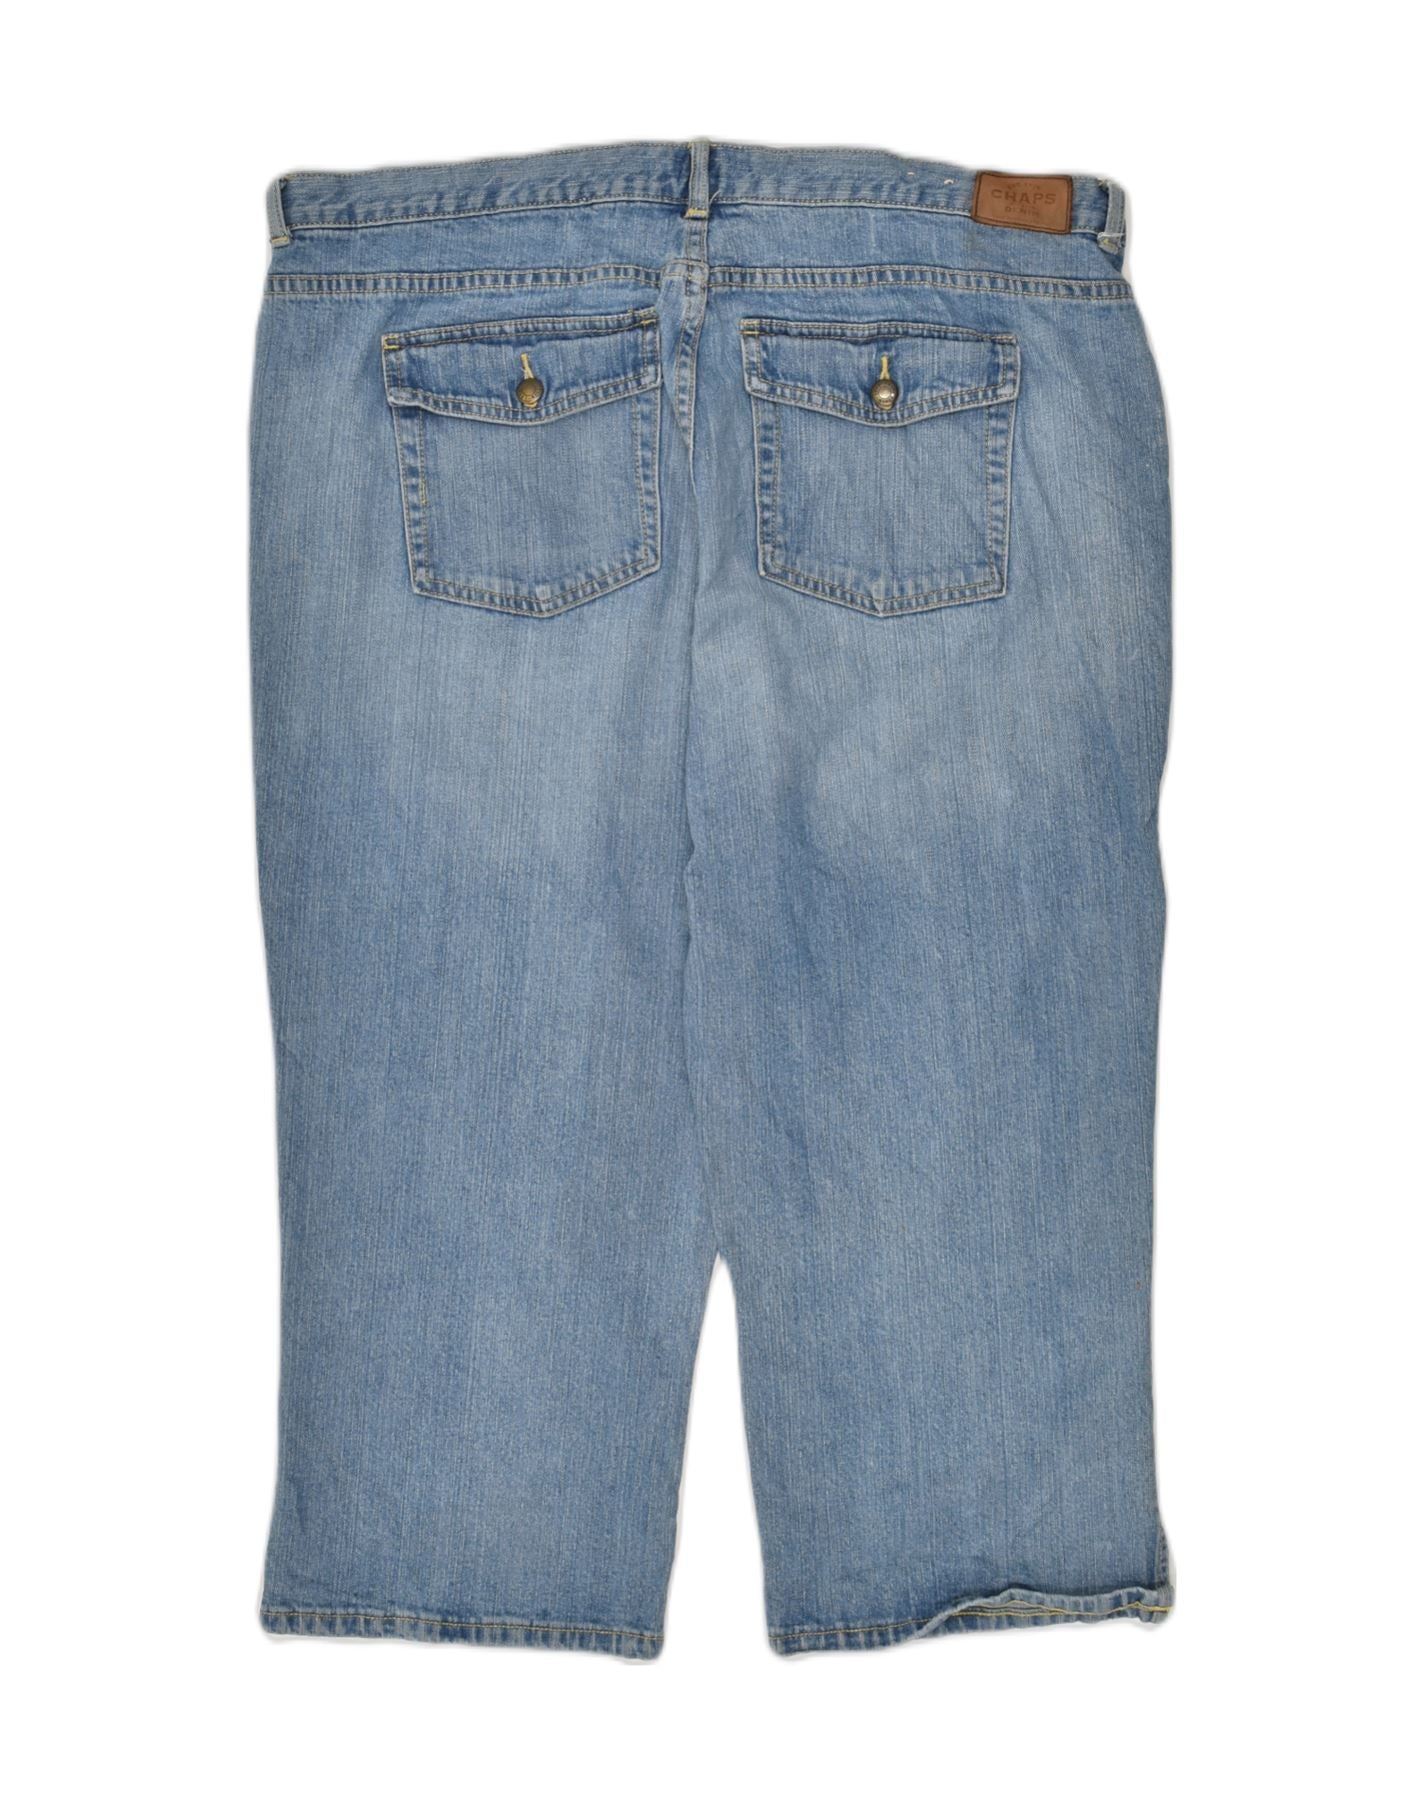 CHAPS Womens Capri Jeans US 16 2XL W38 L20 Blue Cotton, Vintage &  Second-Hand Clothing Online